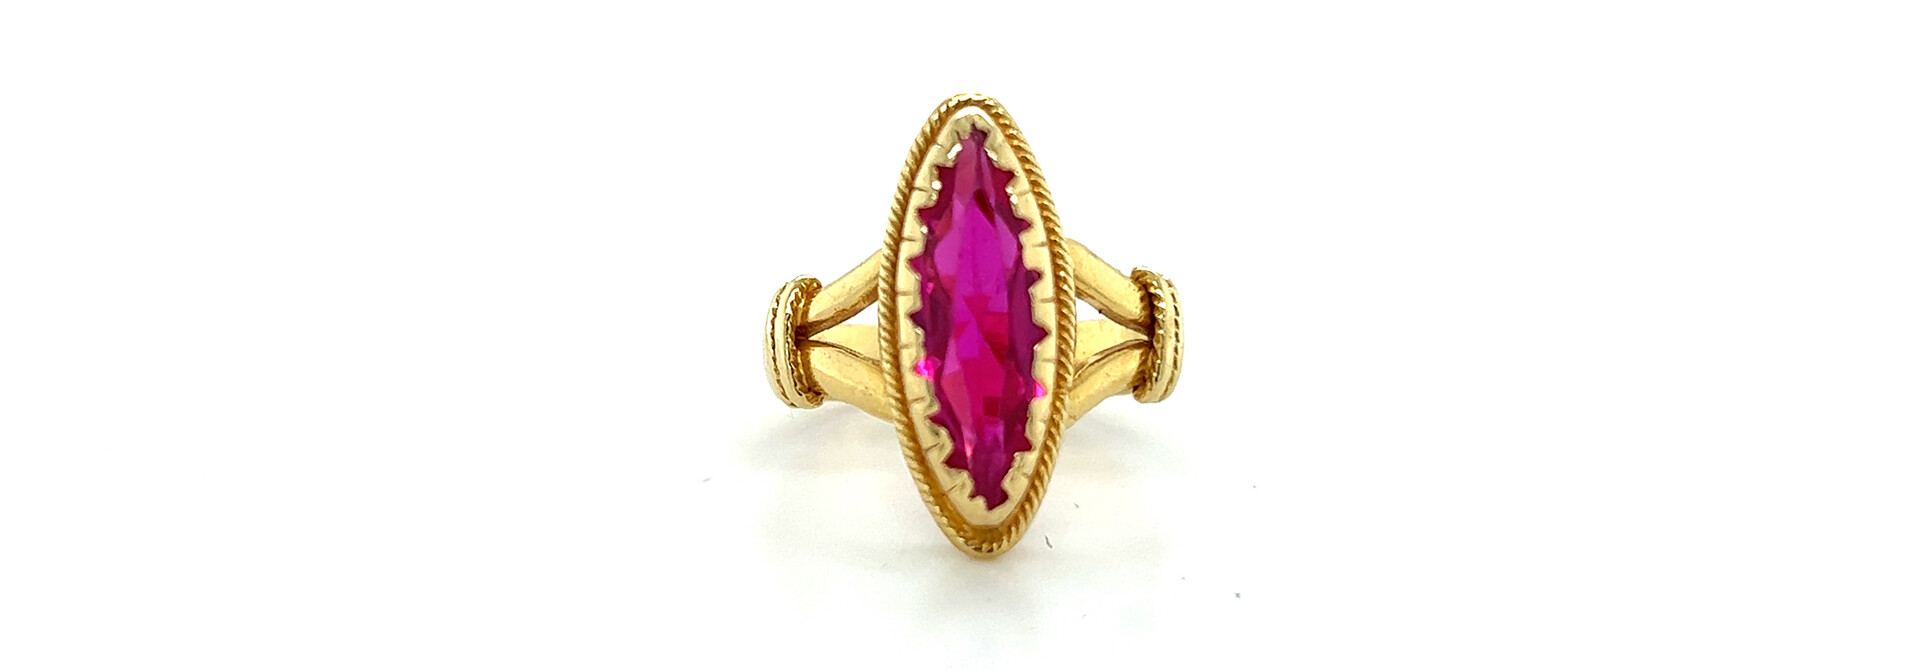 Vintage style ring met paarse steen